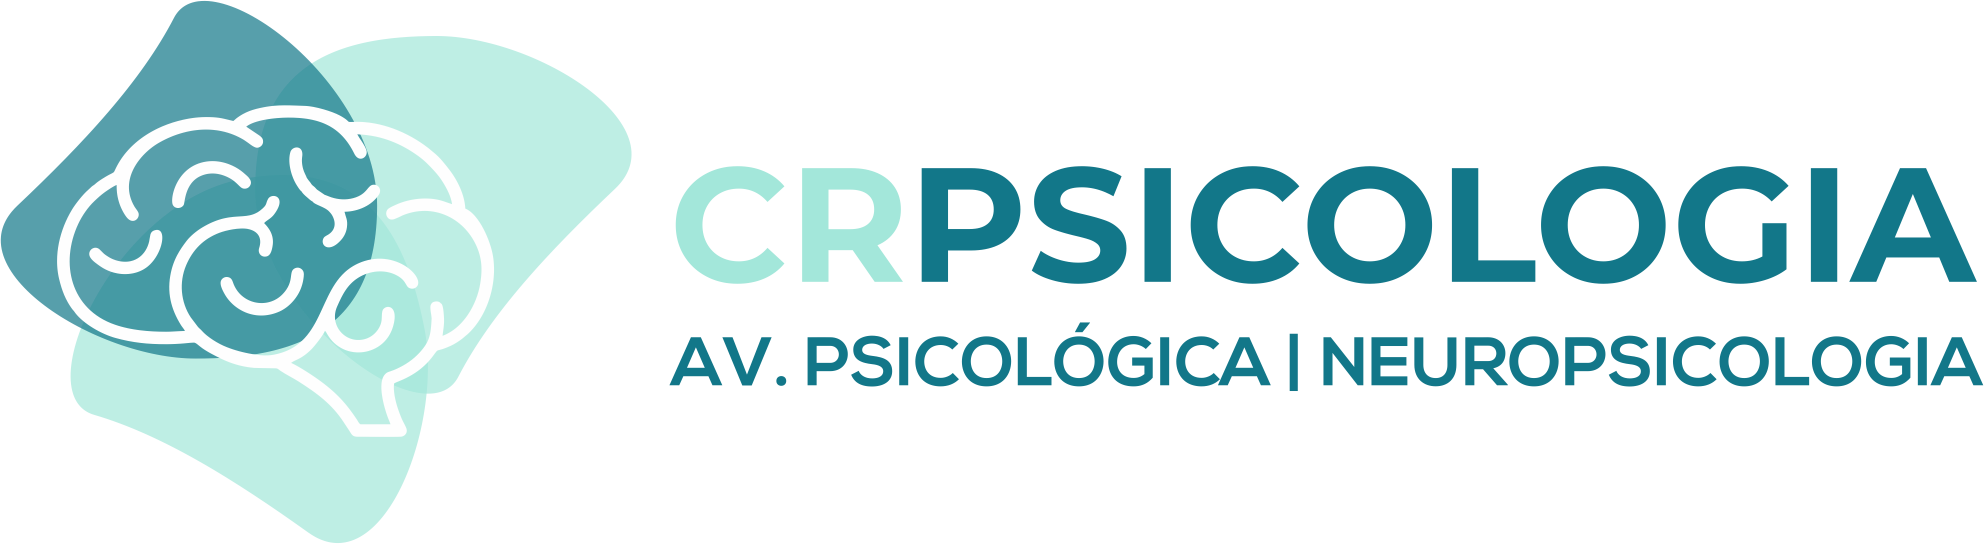 CRPsicologia Av Psicológica e Neuropsicologia